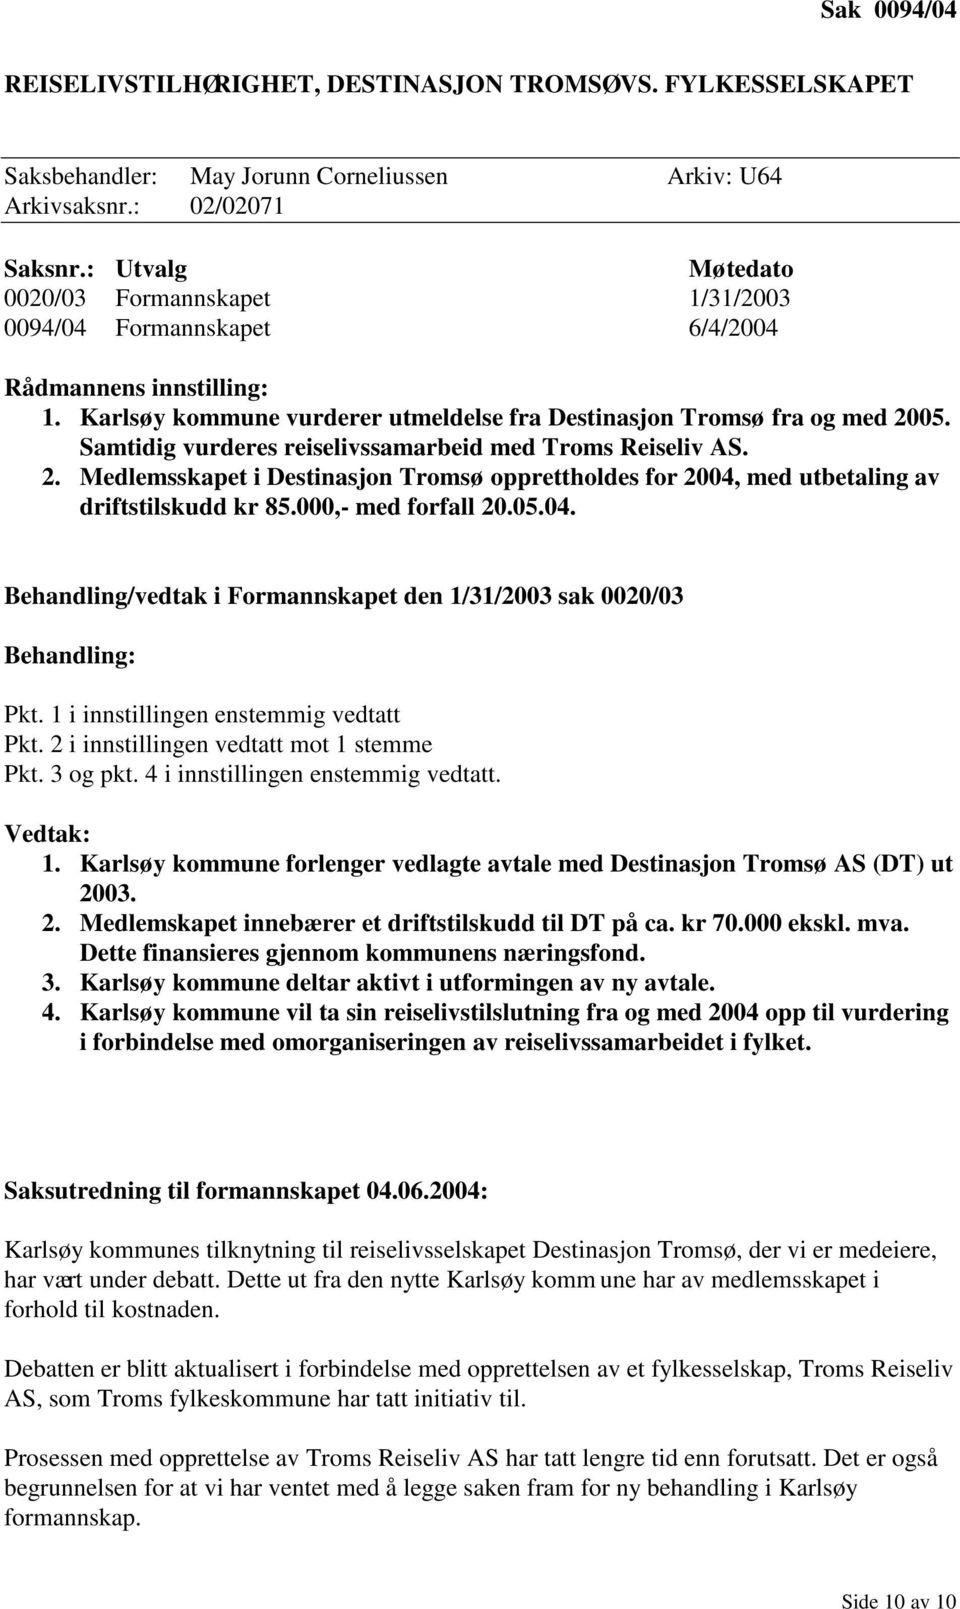 Samtidig vurderes reiselivssamarbeid med Troms Reiseliv AS. 2. Medlemsskapet i Destinasjon Tromsø opprettholdes for 2004, med utbetaling av driftstilskudd kr 85.000,- med forfall 20.05.04. Behandling/vedtak i Formannskapet den 1/31/2003 sak 0020/03 Behandling: Pkt.